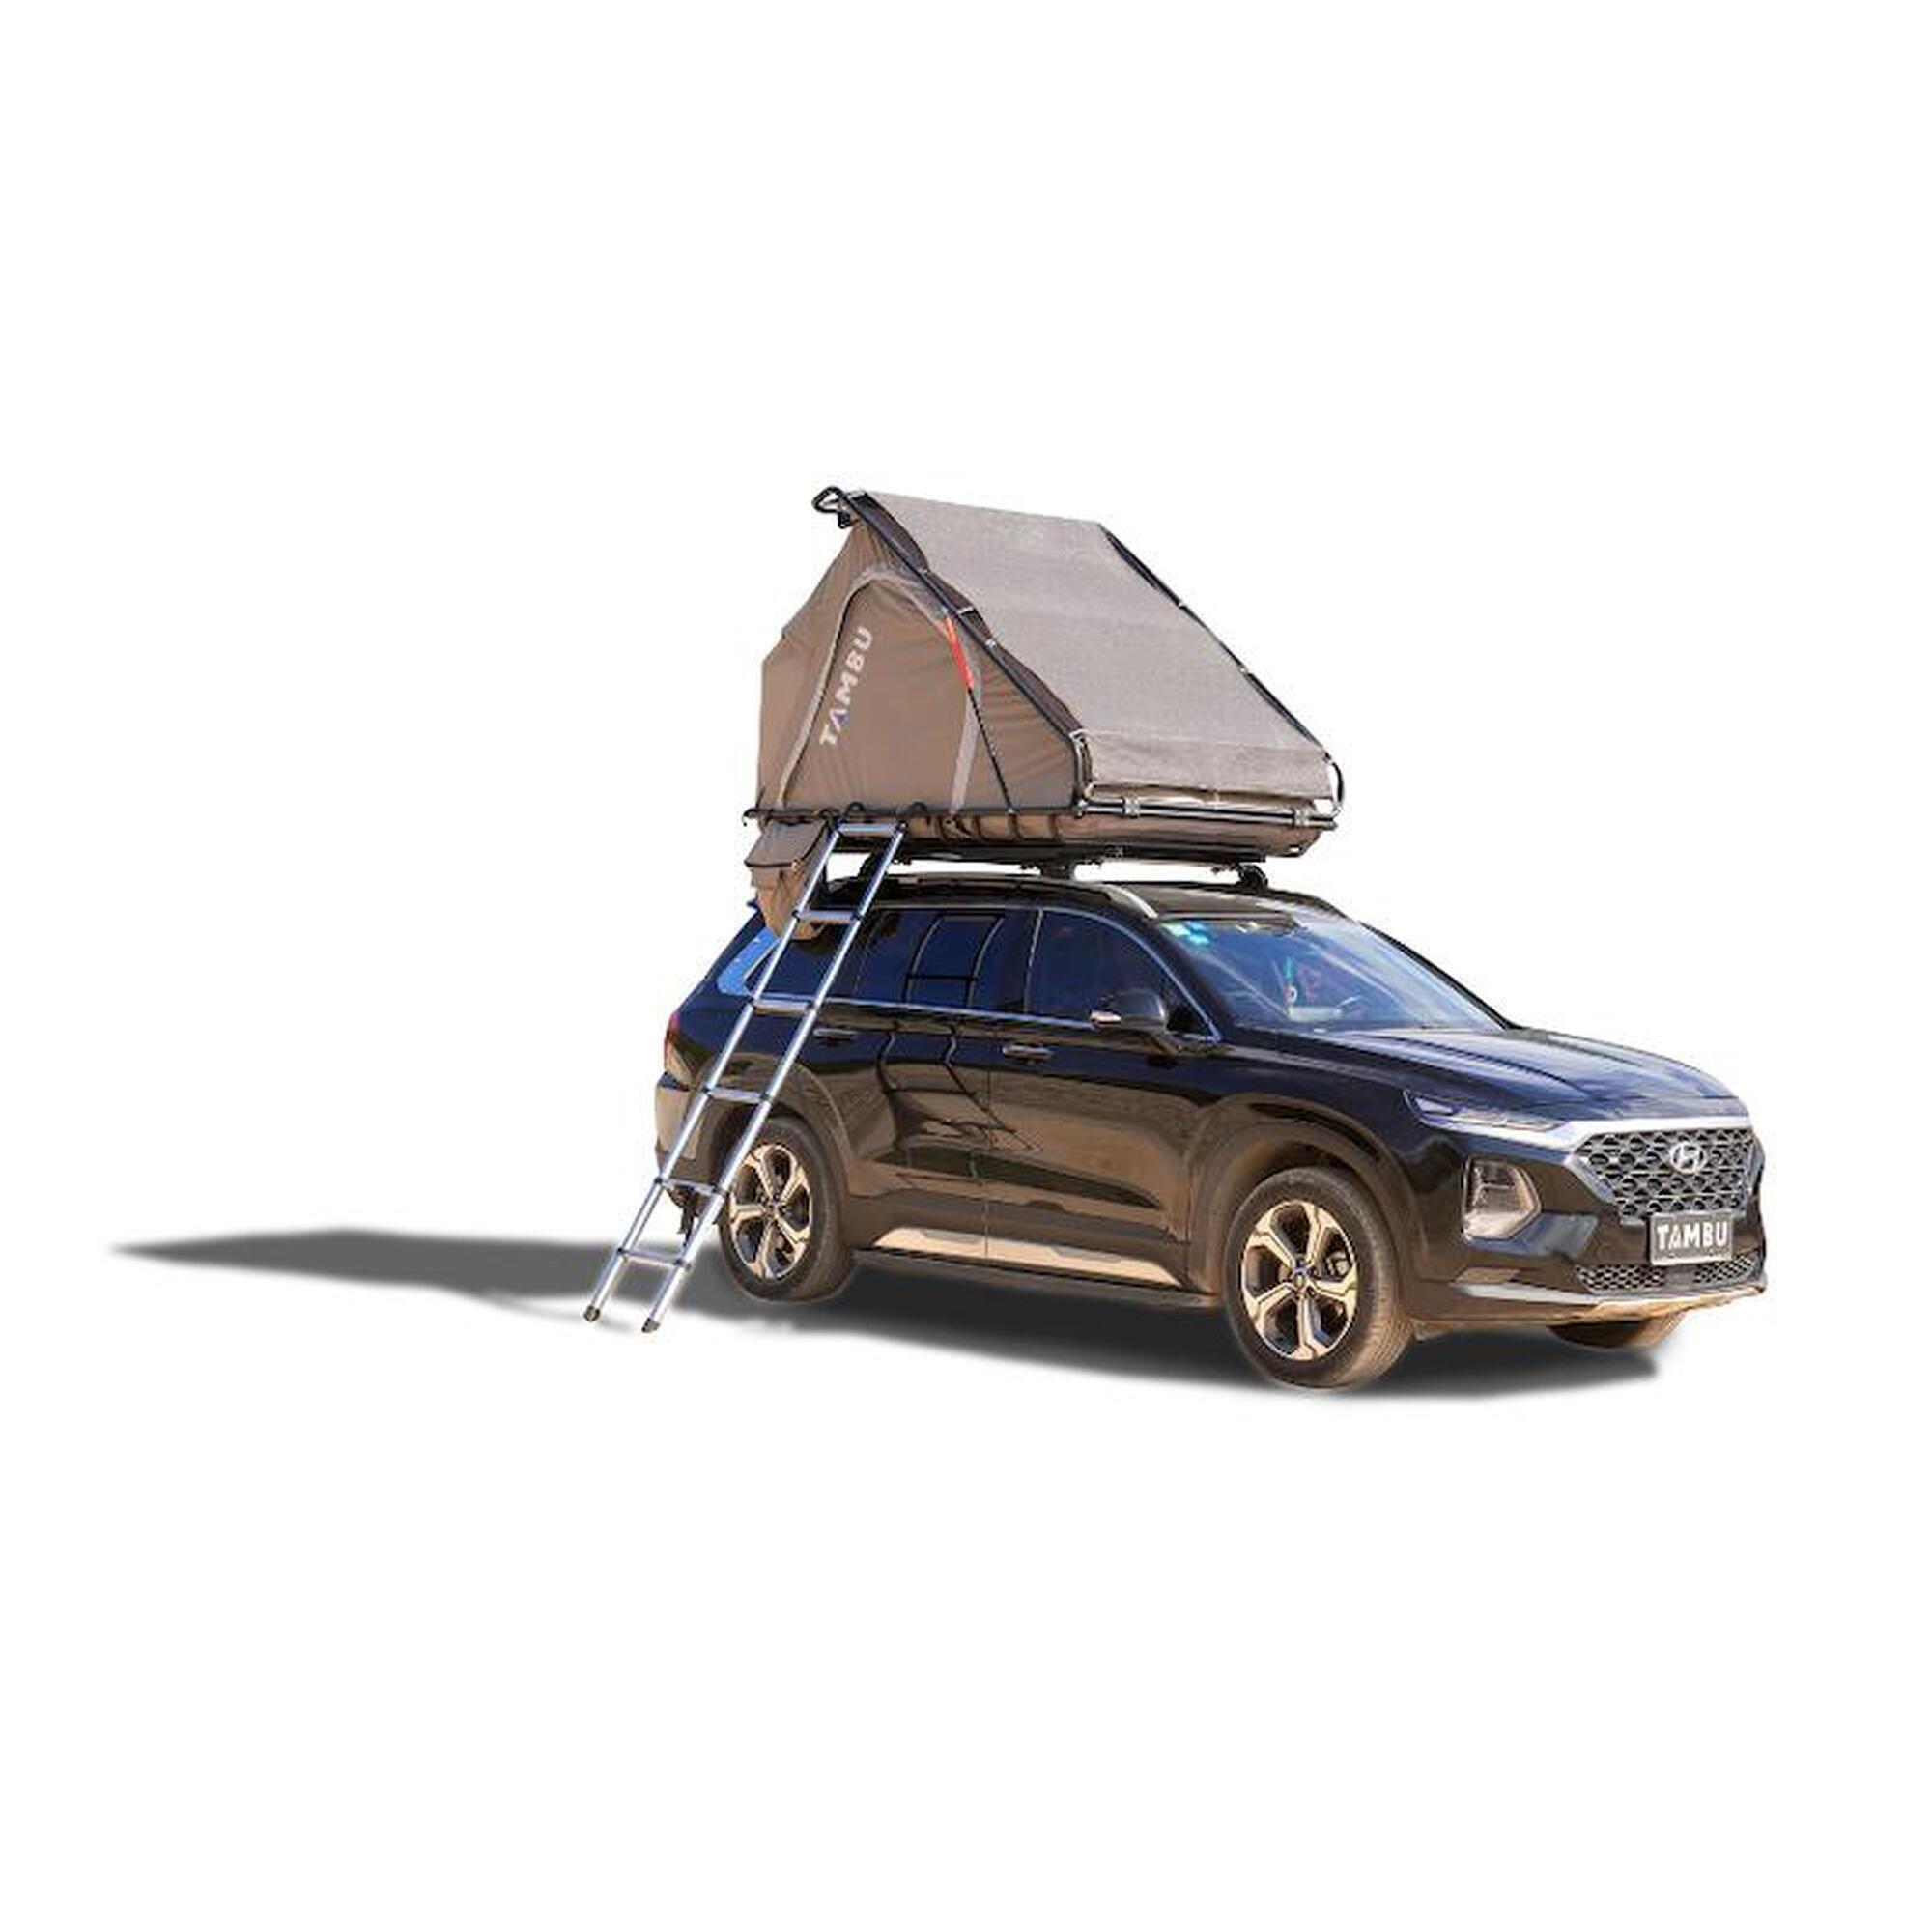 Dachzelt fürs Auto  Hohe Qualität & Komfort in der Höhe